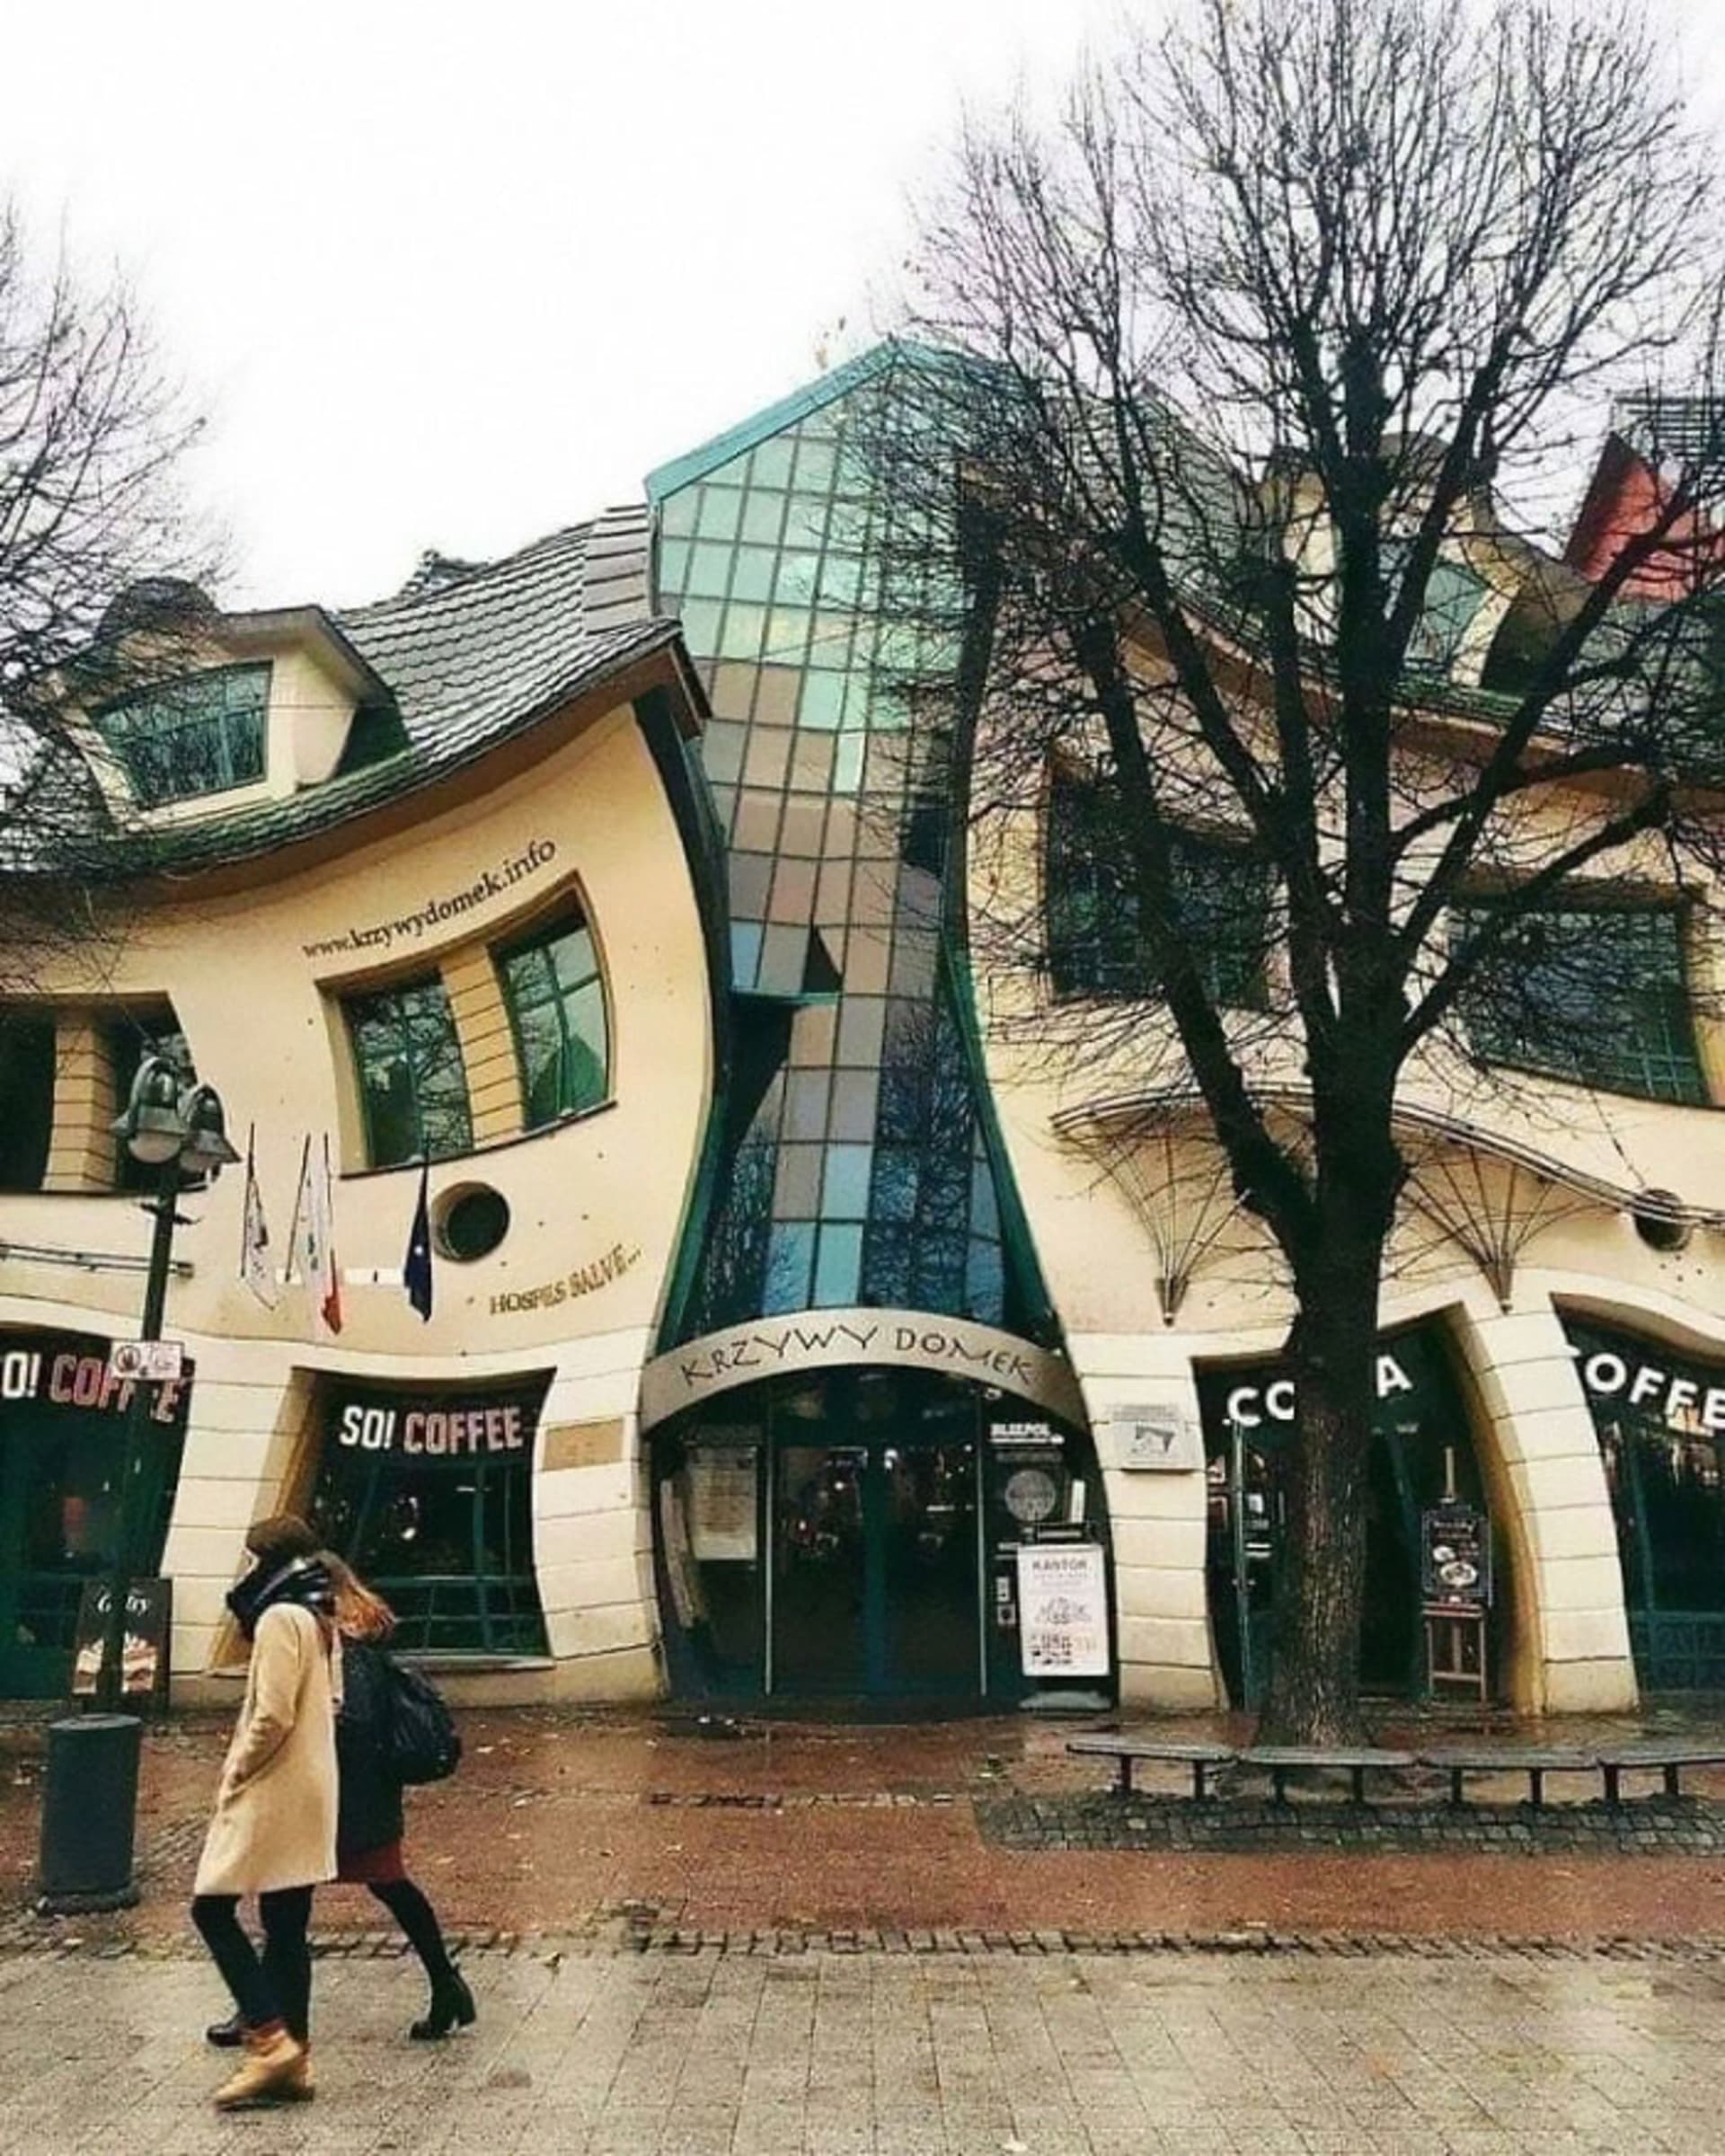 Podivné stavby najdete všude na světě...